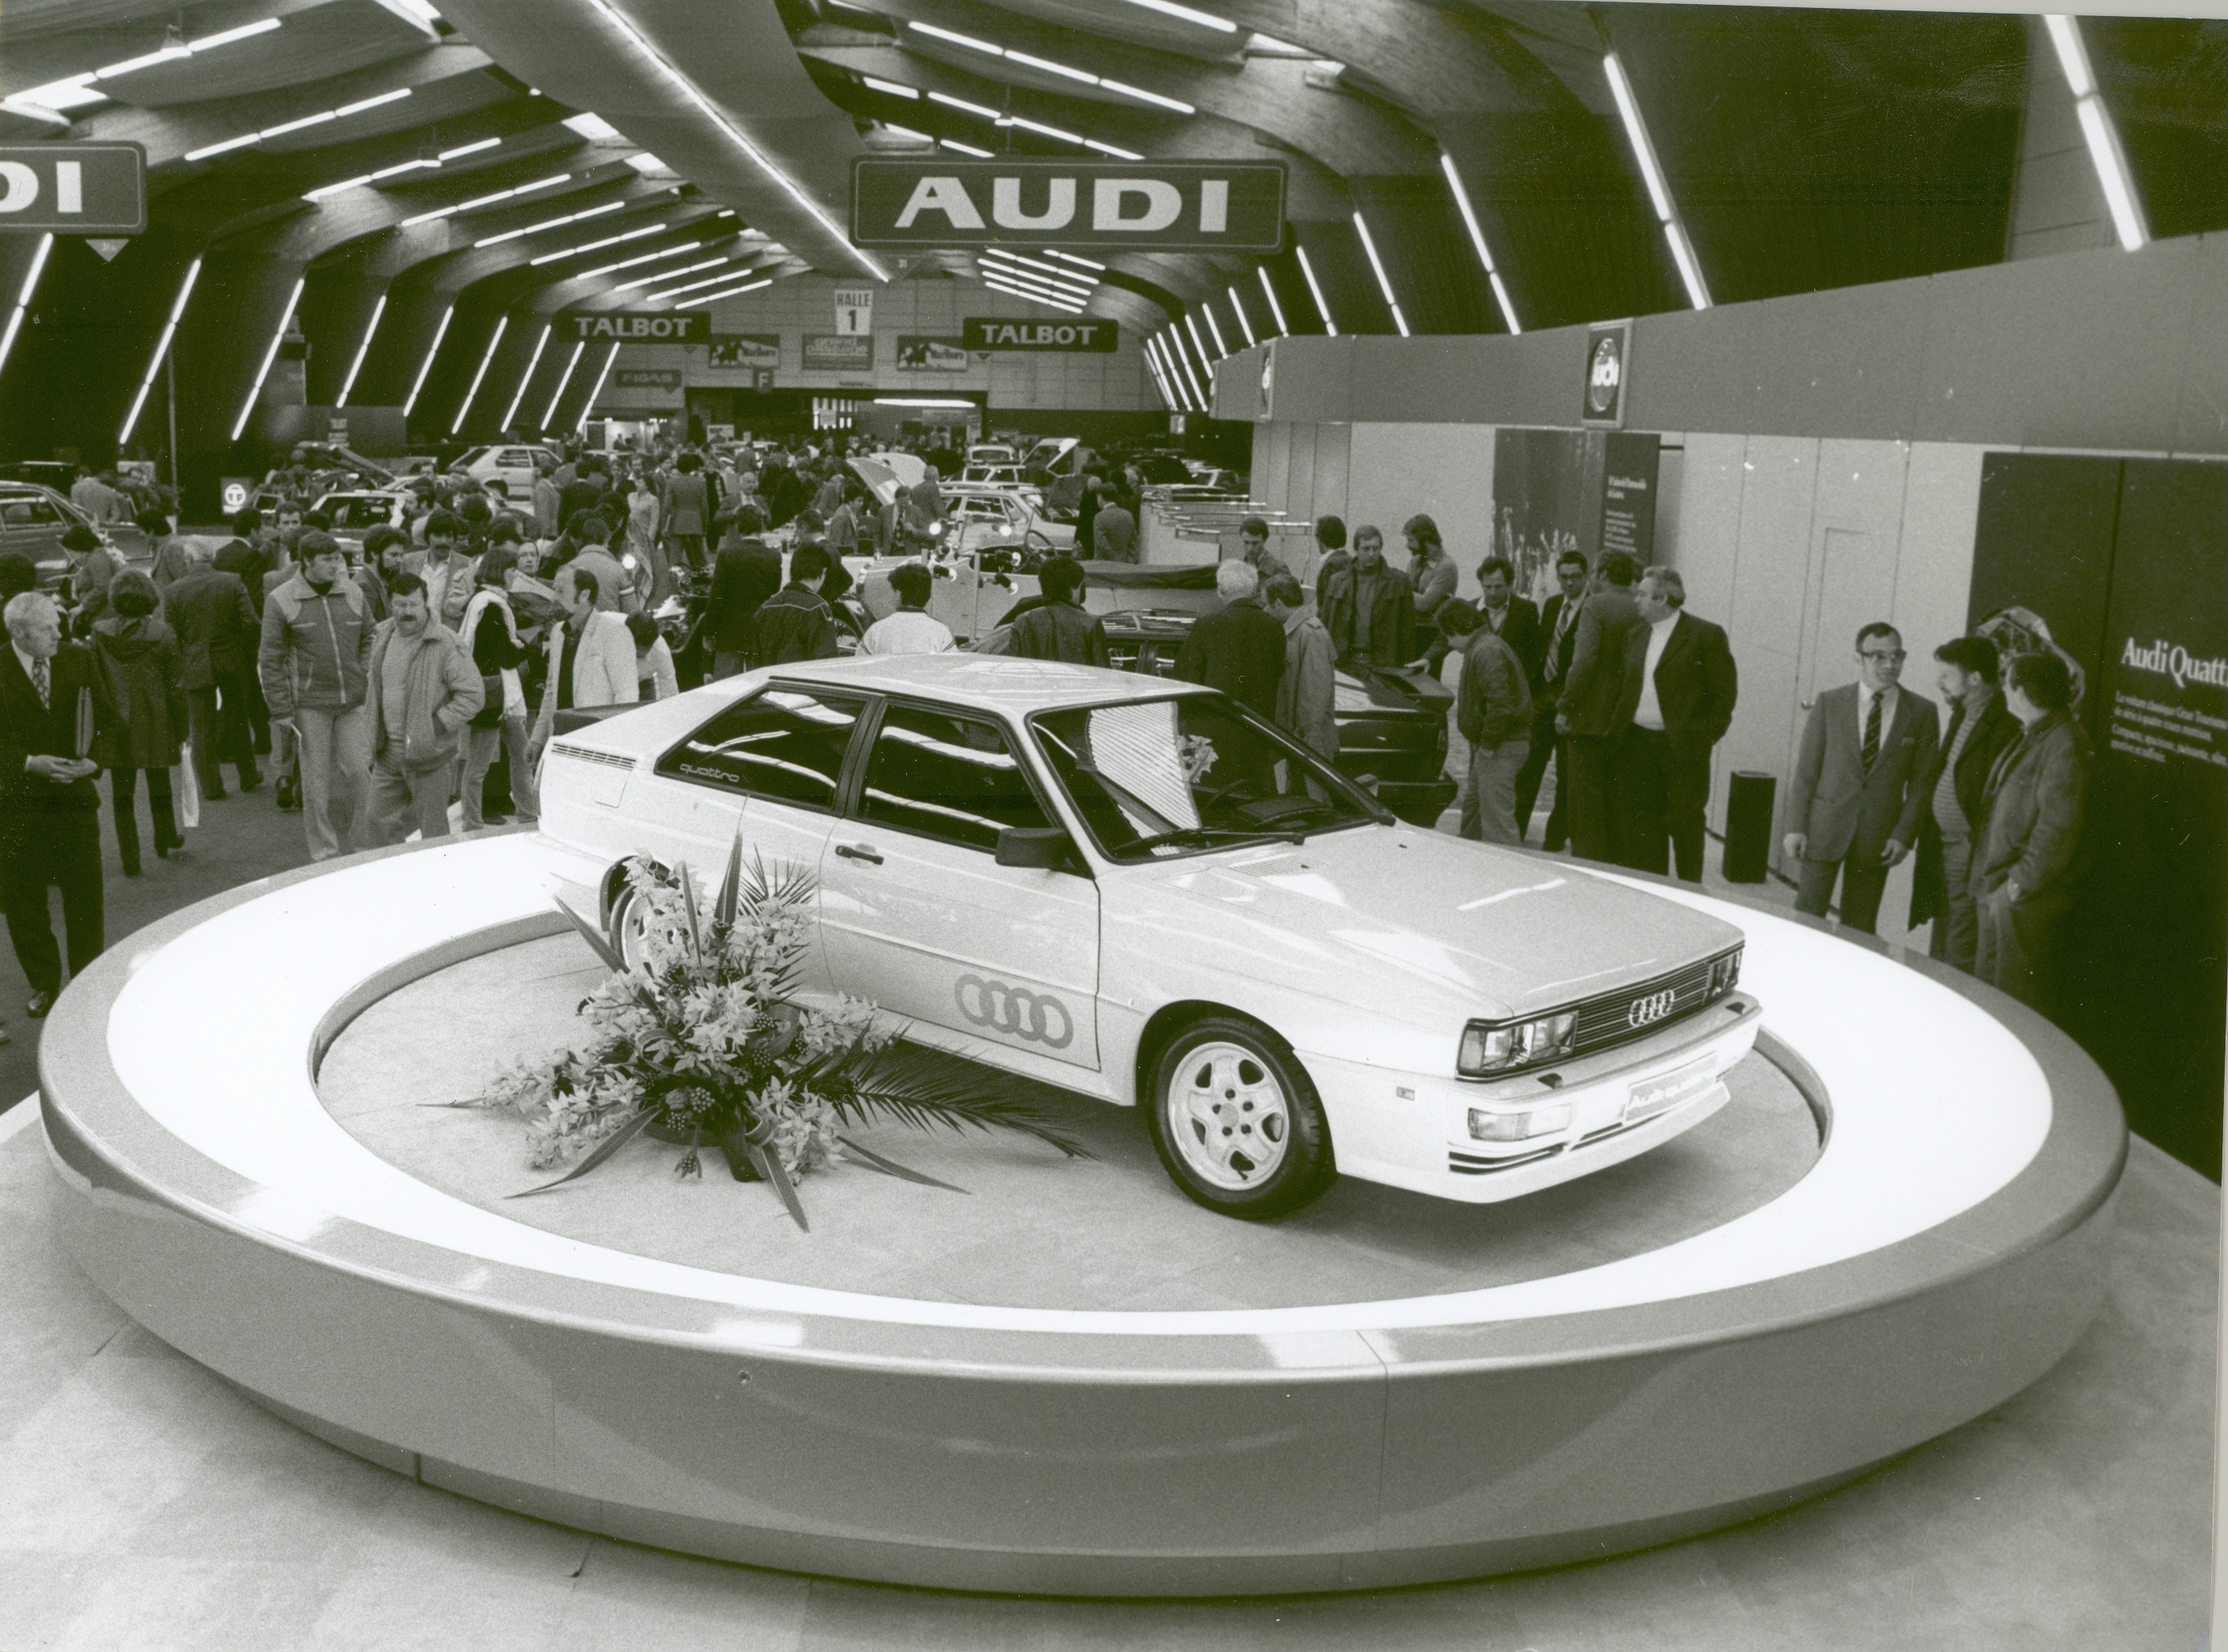 Audi Tradition świętuje 40. urodziny quattro